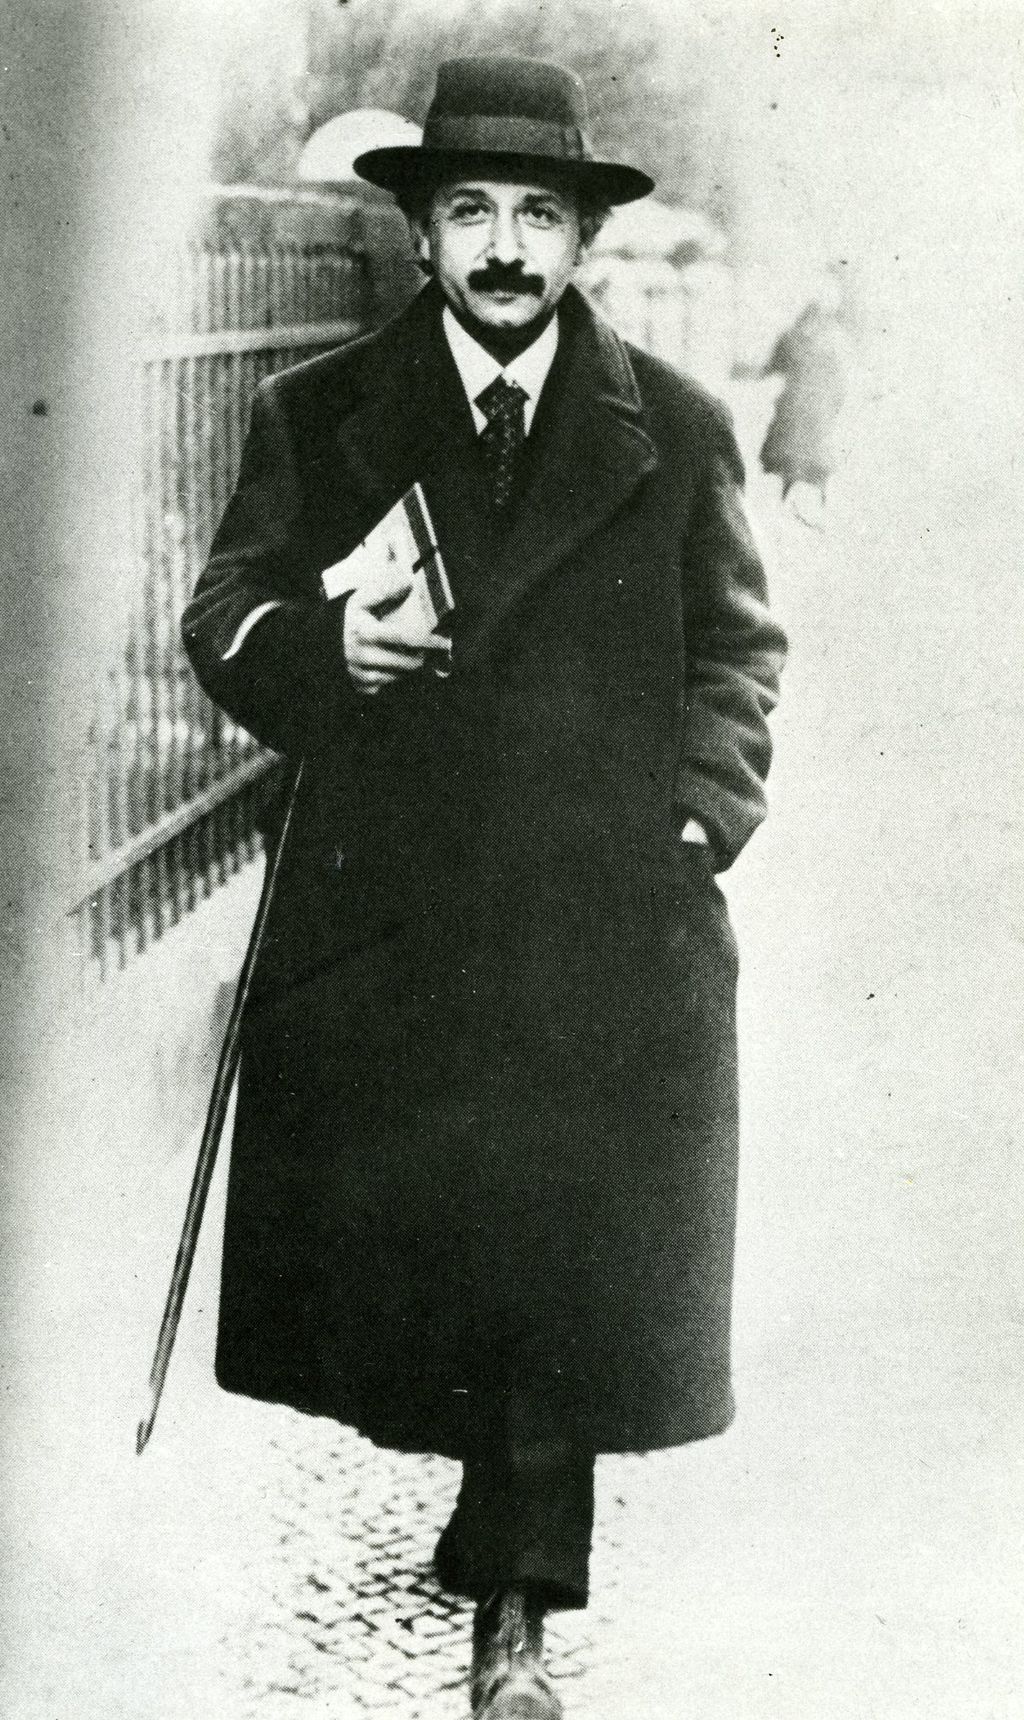 Exponat: Einstein, Albert auf dem Weg zur Vorlesung, 1920